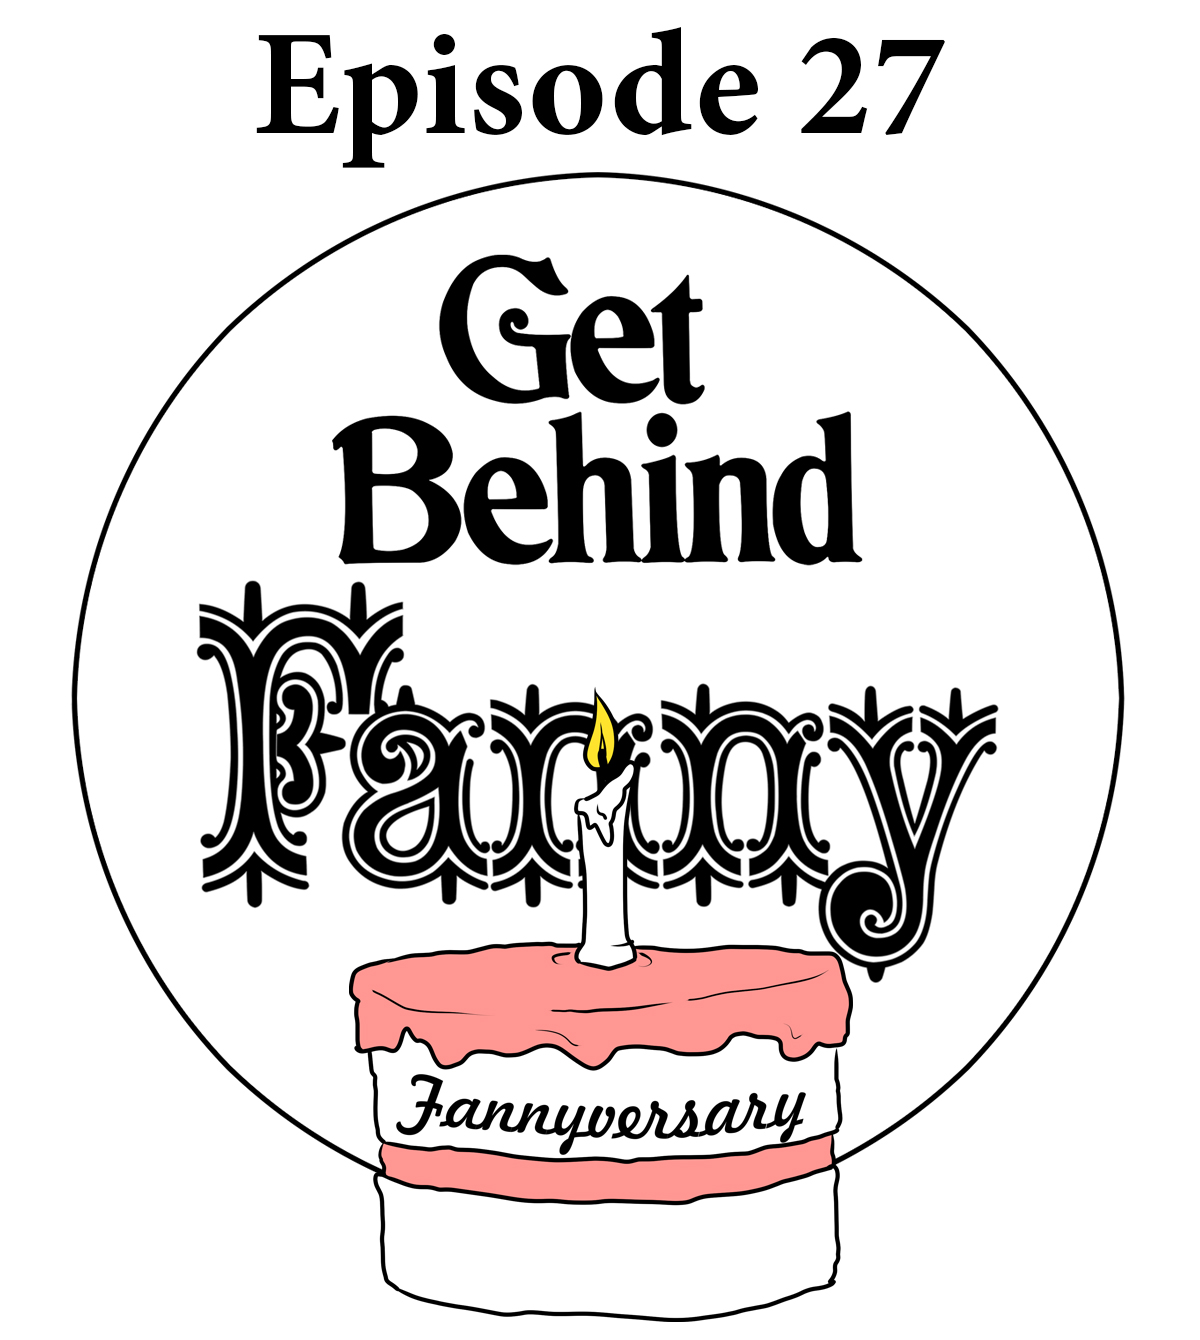 Get Behind Fanny: Episode 27